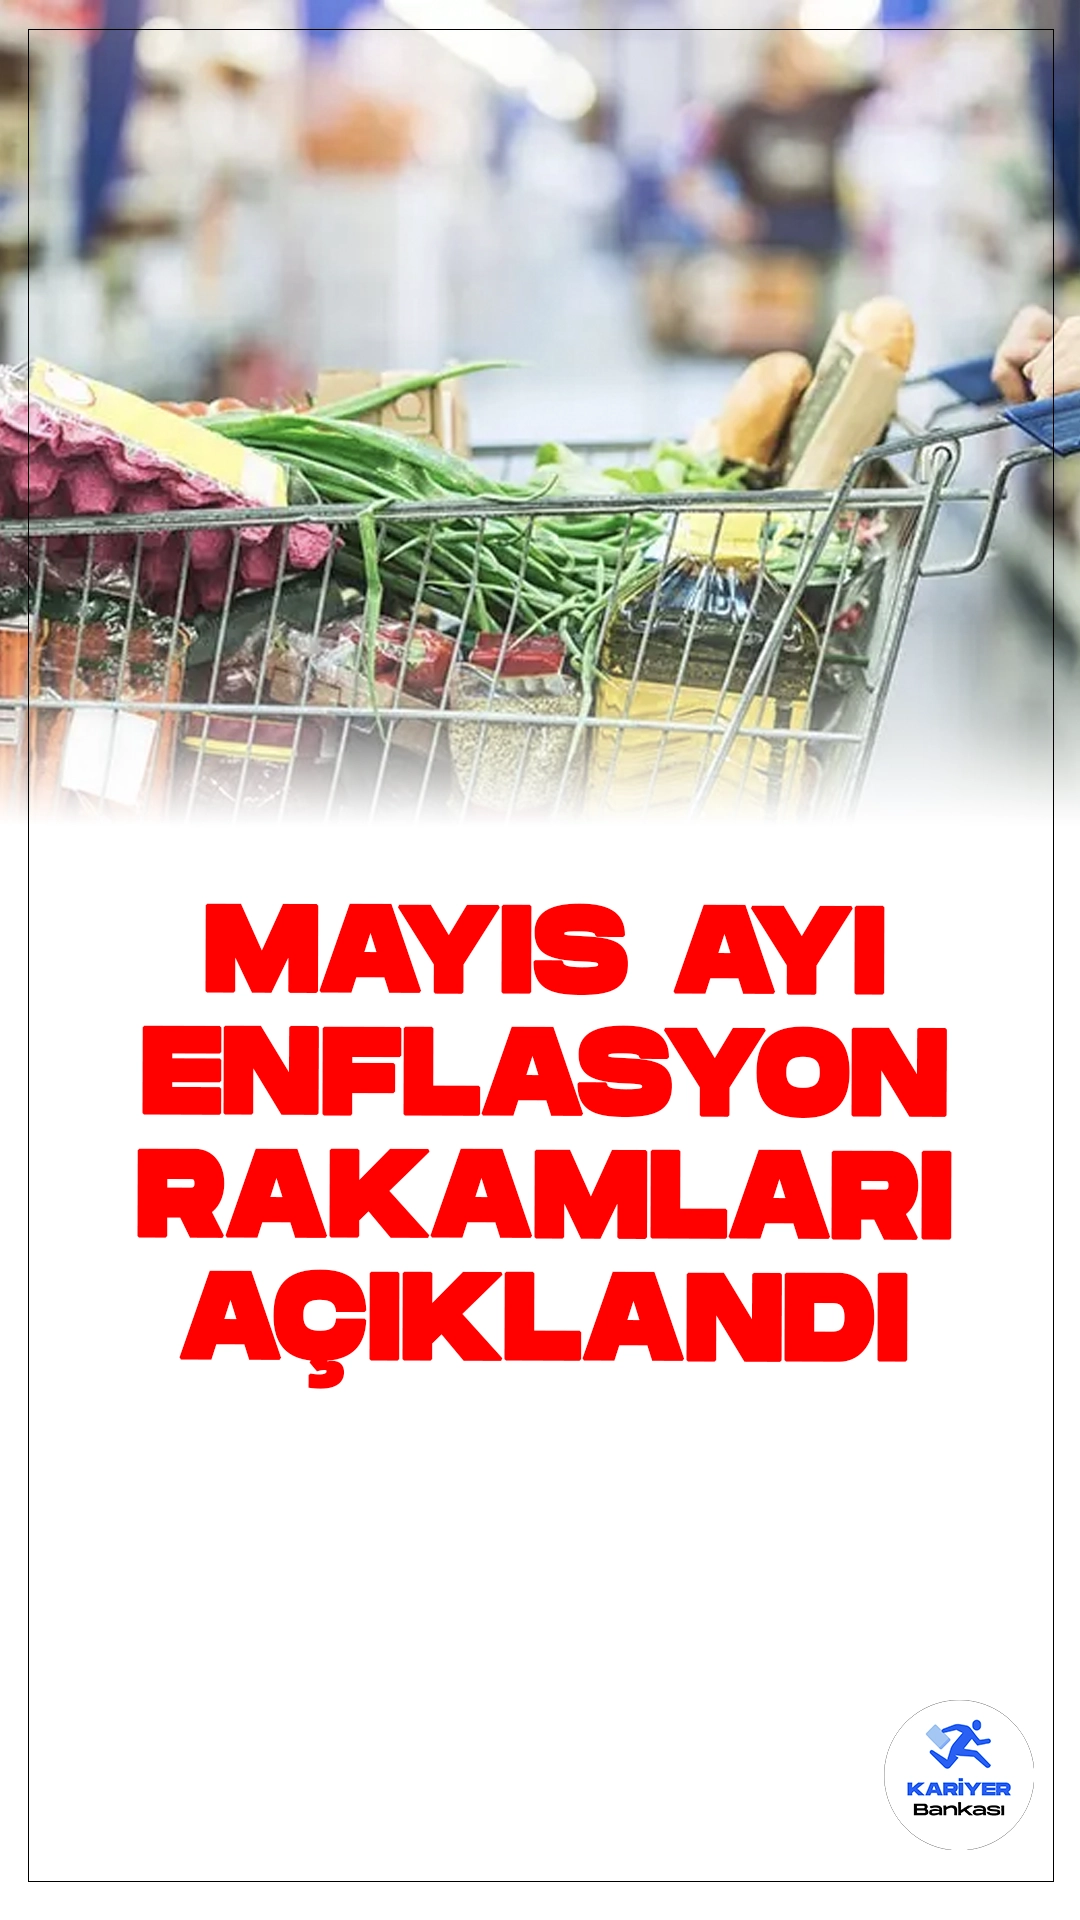 Mayıs Ayı Enflasyon Rakamları Açıklandı.Türkiye İstatistik Kurumu (TÜİK), Mayıs ayına ilişkin Tüketici Fiyat Endeksi (TÜFE) verilerini açıkladı. Açıklanan verilere göre, Mayıs ayında TÜFE, bir önceki aya göre yüzde 3,37 oranında artış gösterdi. Bu artış, yıllık bazda yüzde 75,45 olarak gerçekleşti.